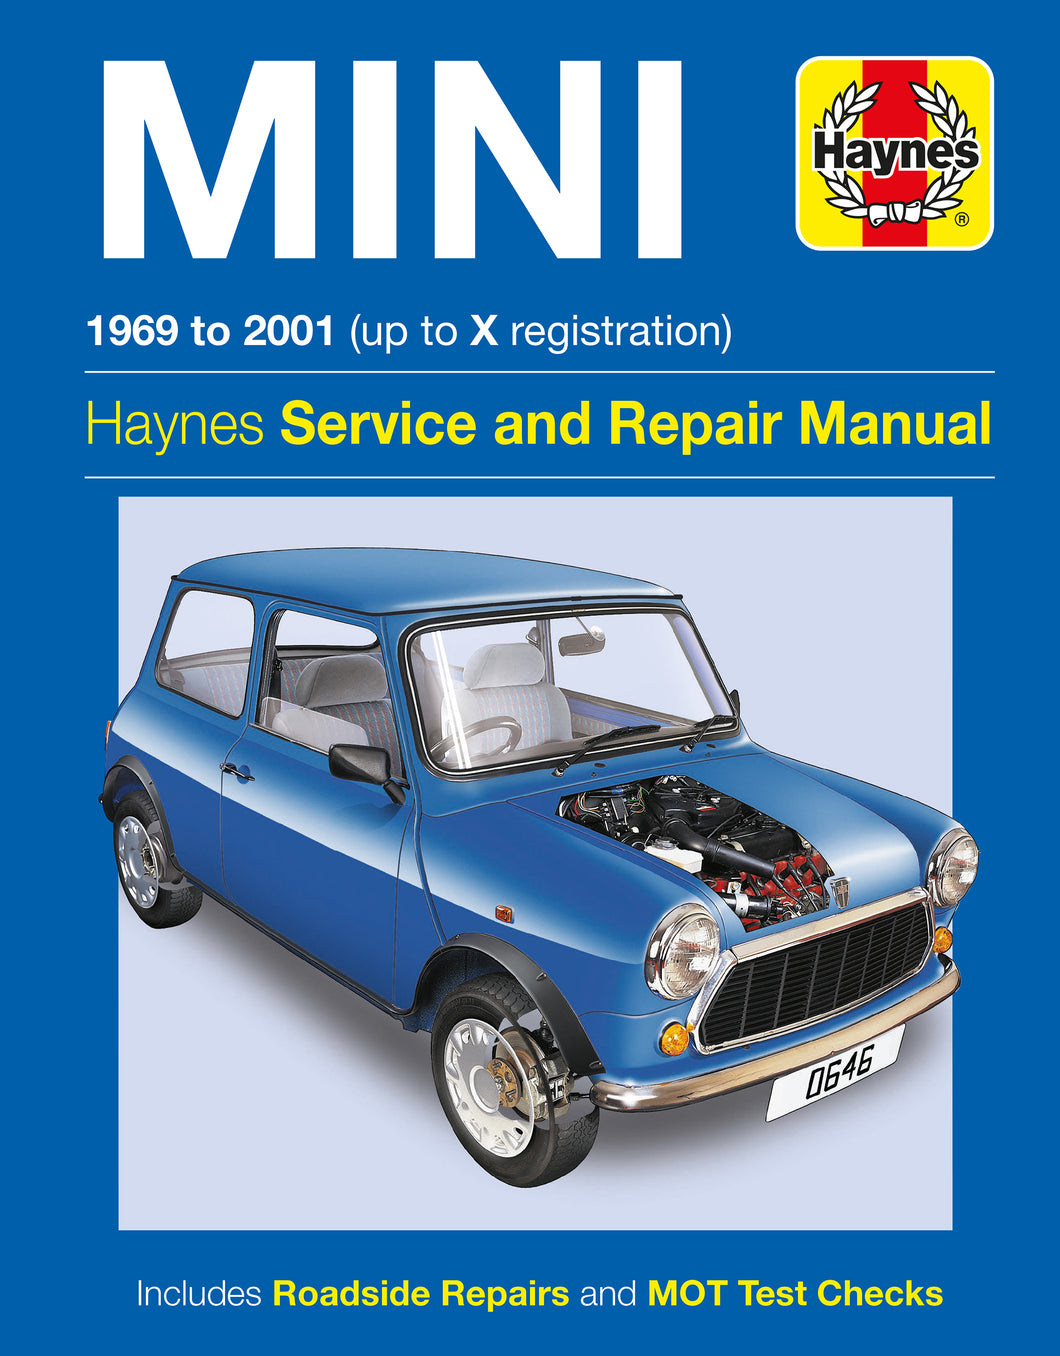 Mini (1969 - 2001) Haynes Repair Manual